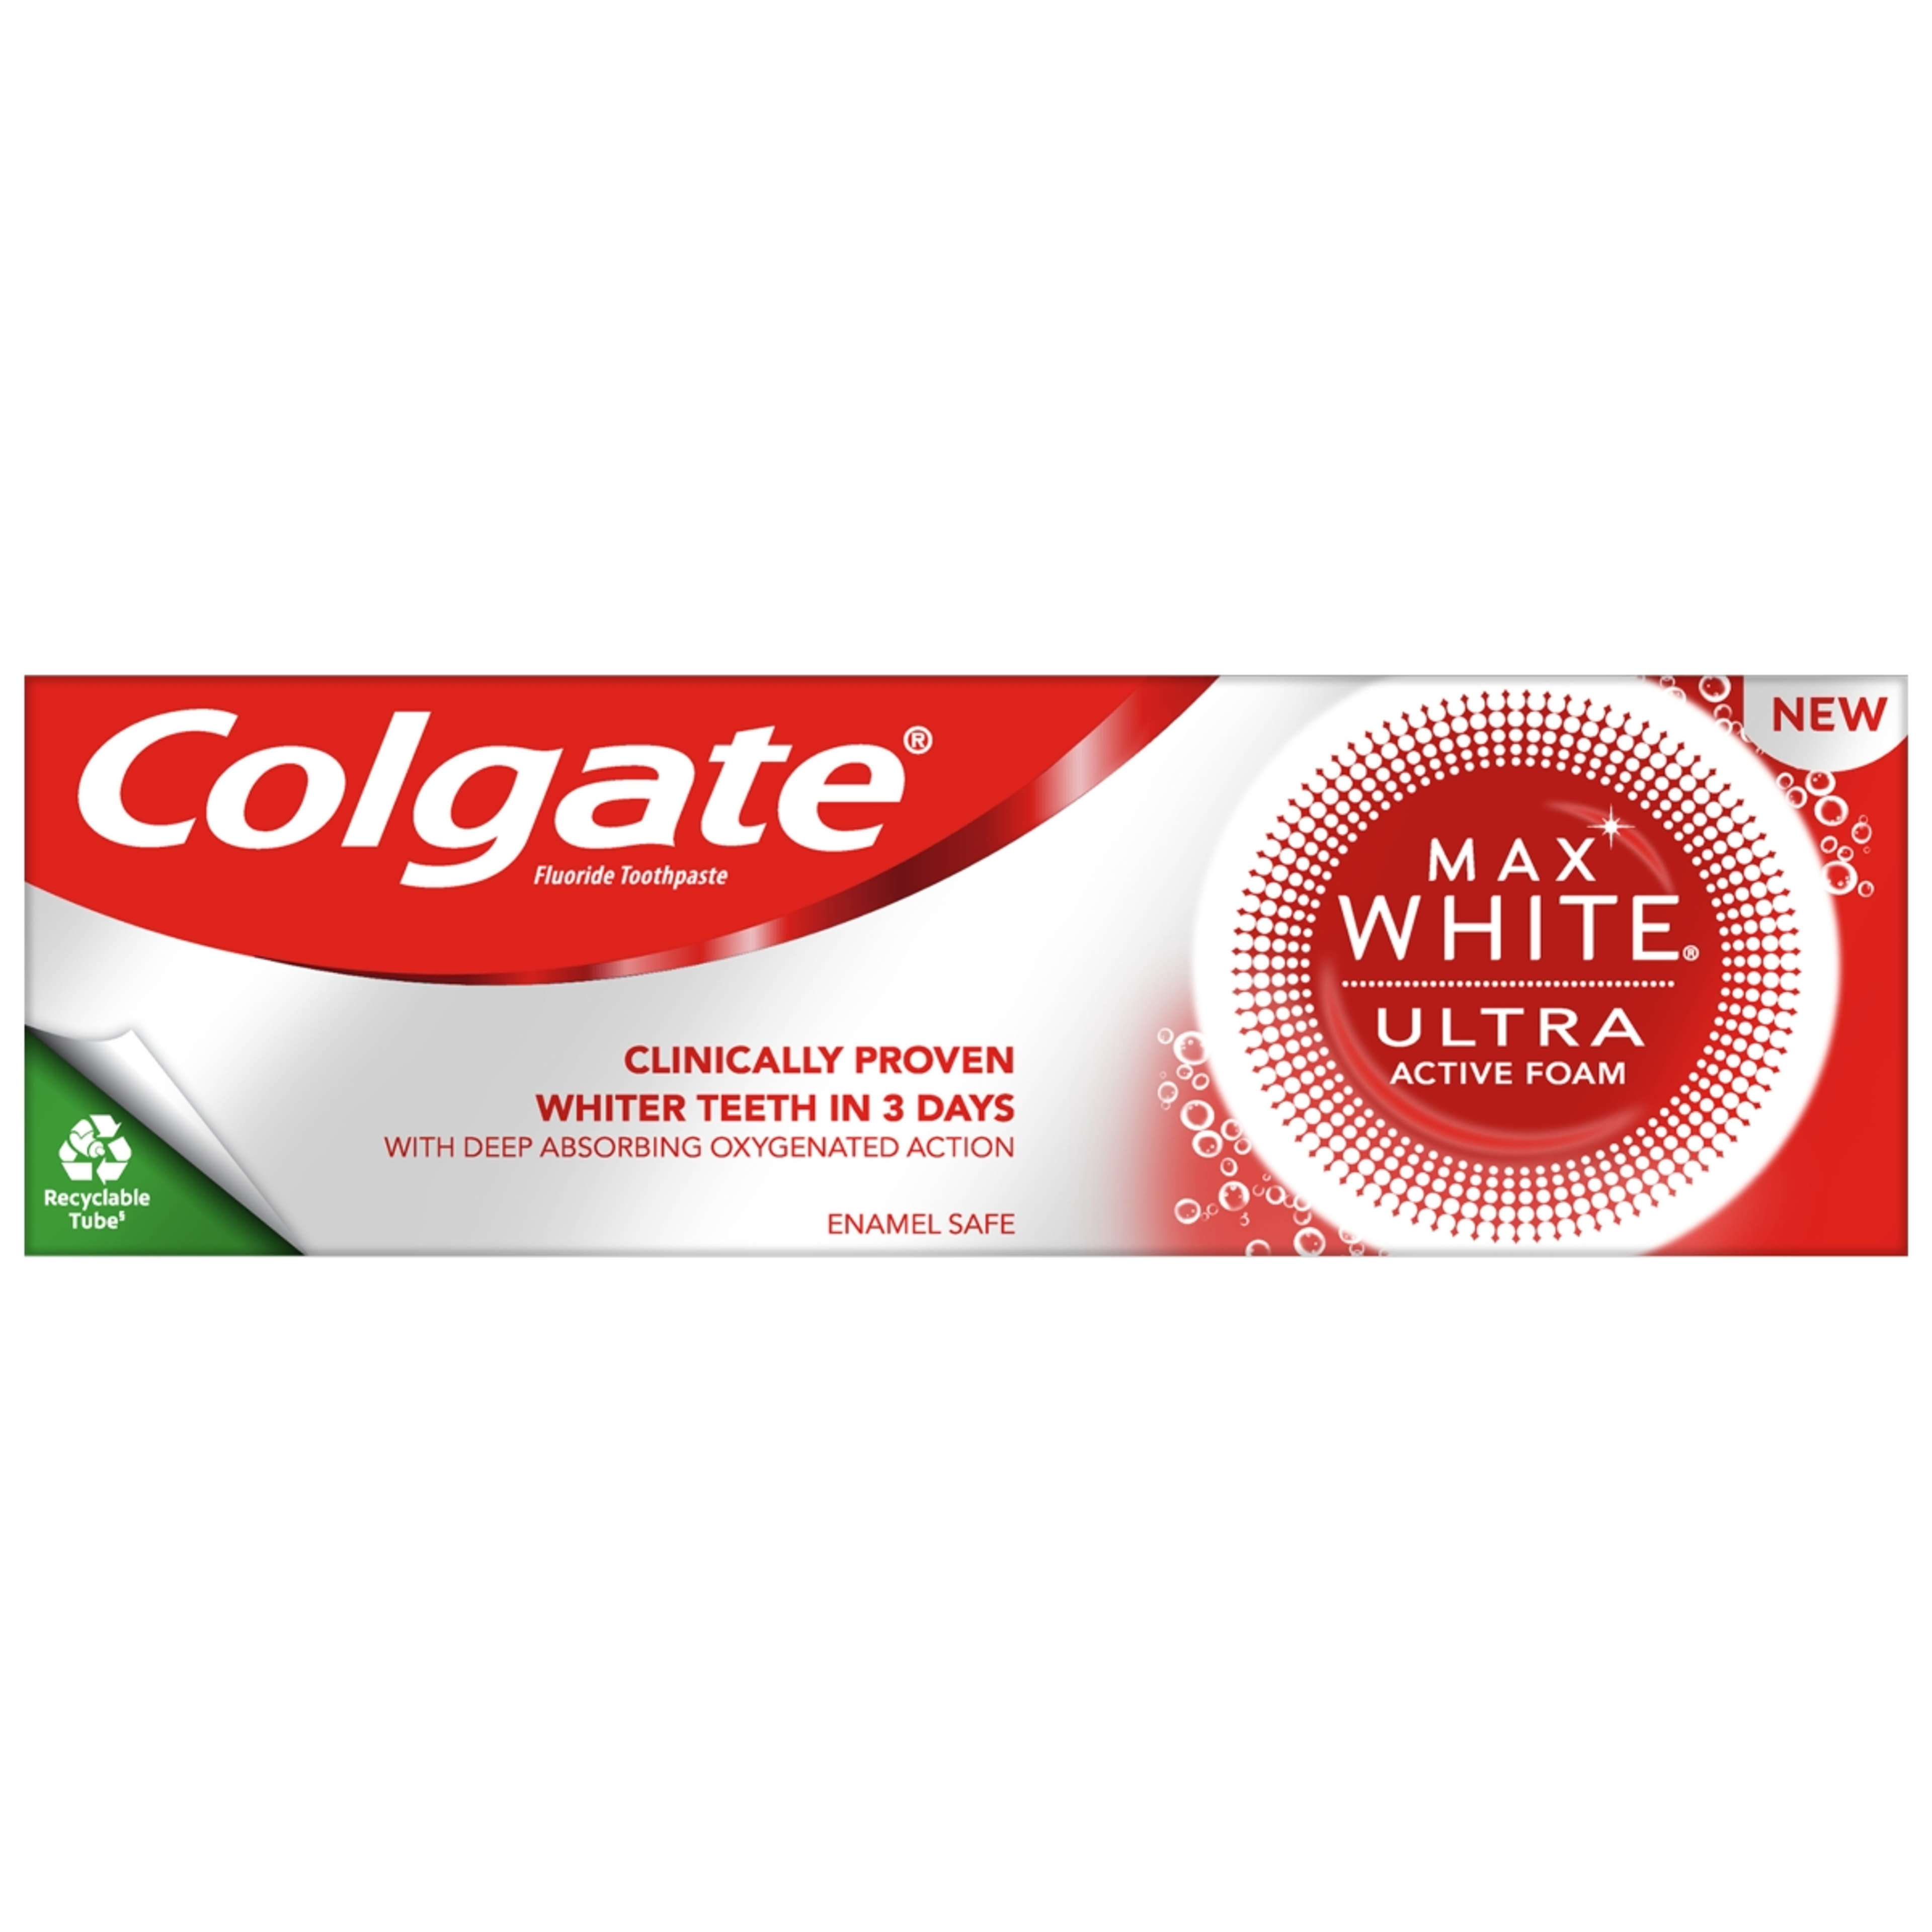 Colgate Max White Ultra Active Foam Whitening fogkrém - 50ml